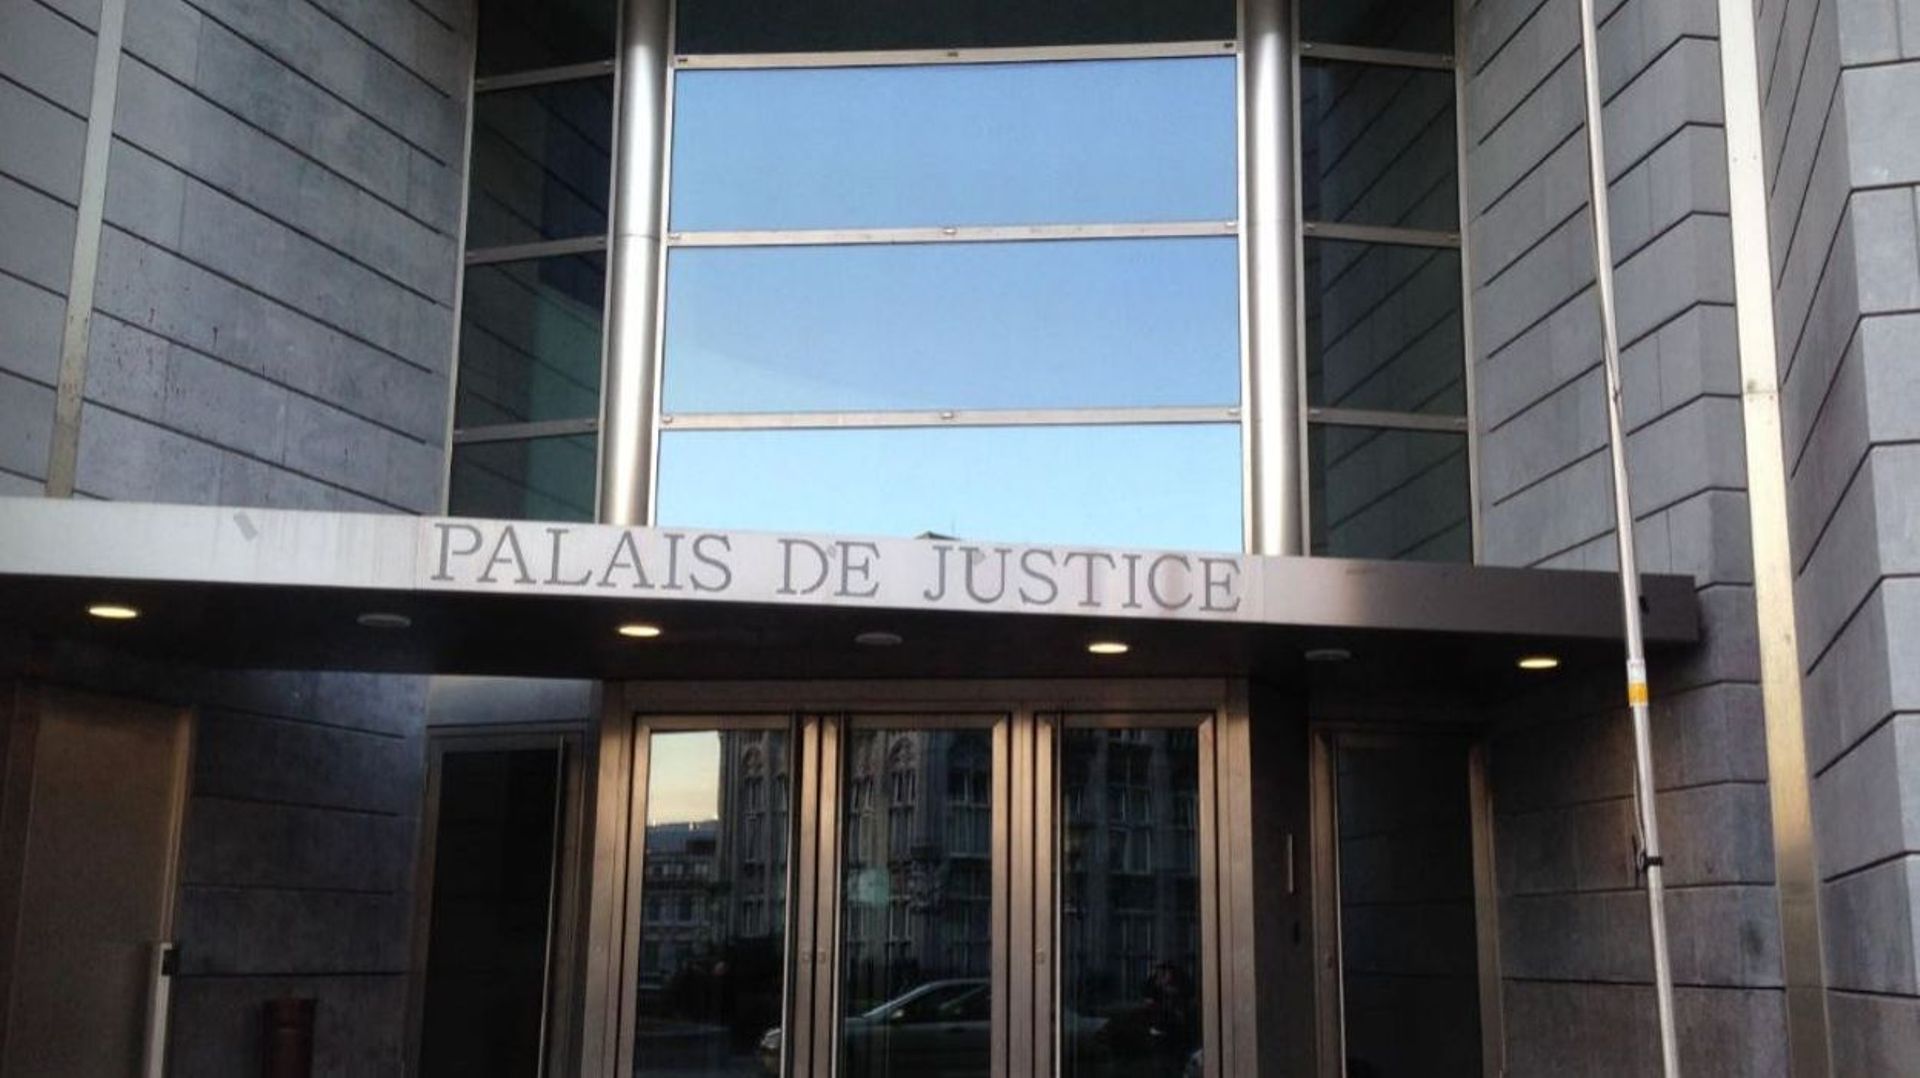 Le front commun syndical a déposé plainte contre le tribunal de première instance de Liège